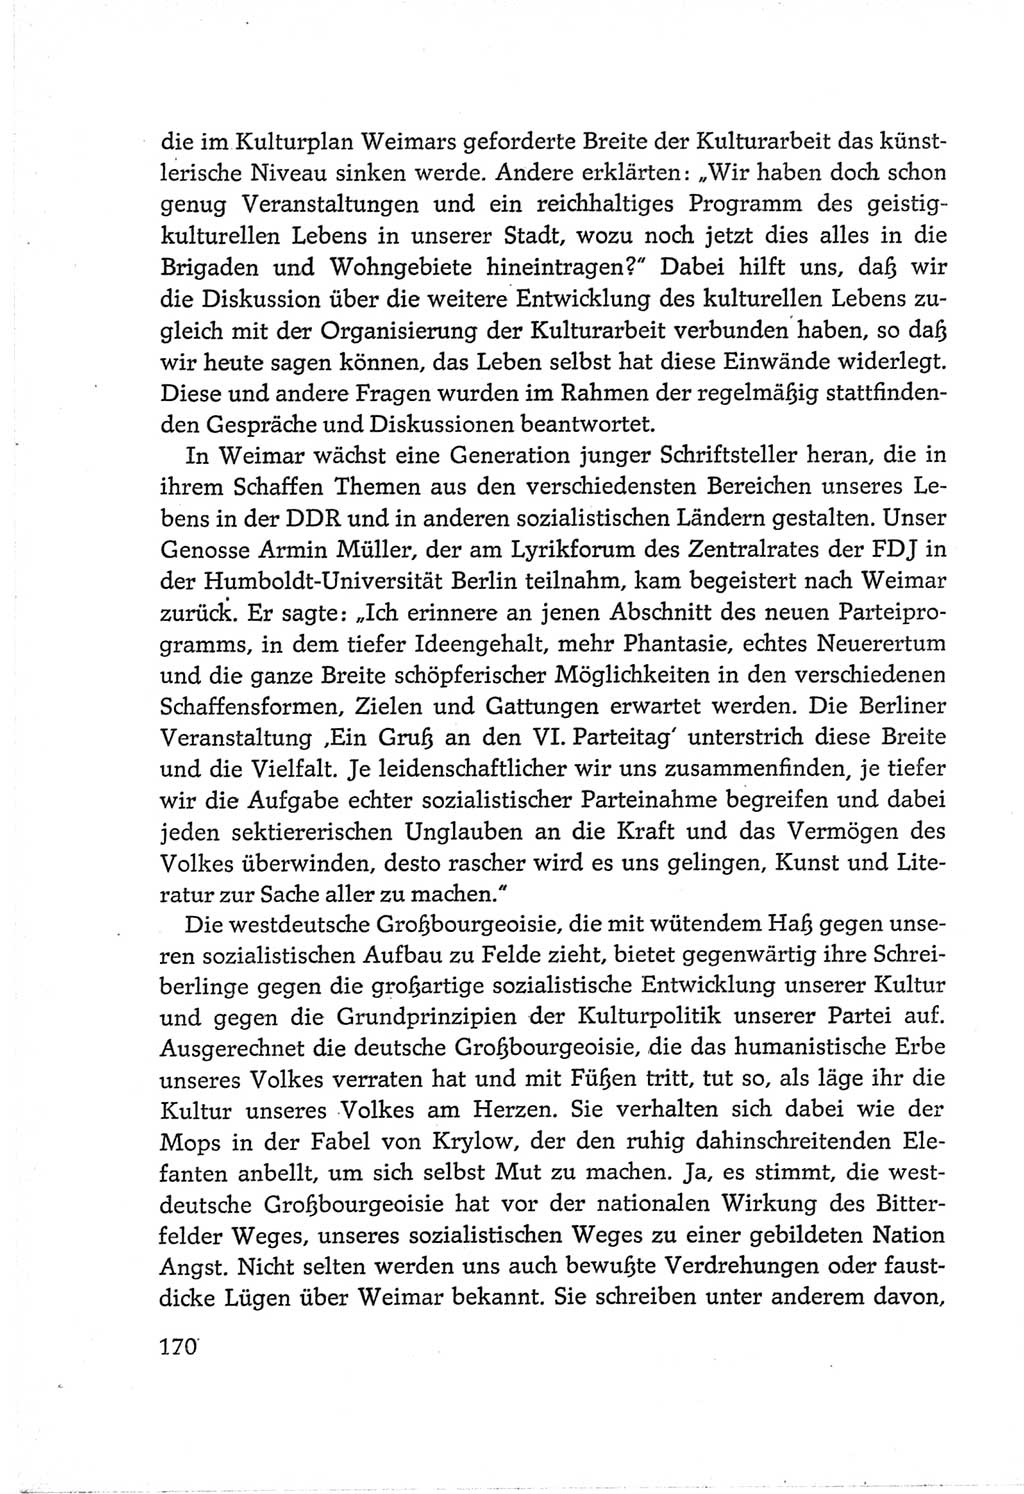 Protokoll der Verhandlungen des Ⅵ. Parteitages der Sozialistischen Einheitspartei Deutschlands (SED) [Deutsche Demokratische Republik (DDR)] 1963, Band Ⅲ, Seite 170 (Prot. Verh. Ⅵ. PT SED DDR 1963, Bd. Ⅲ, S. 170)